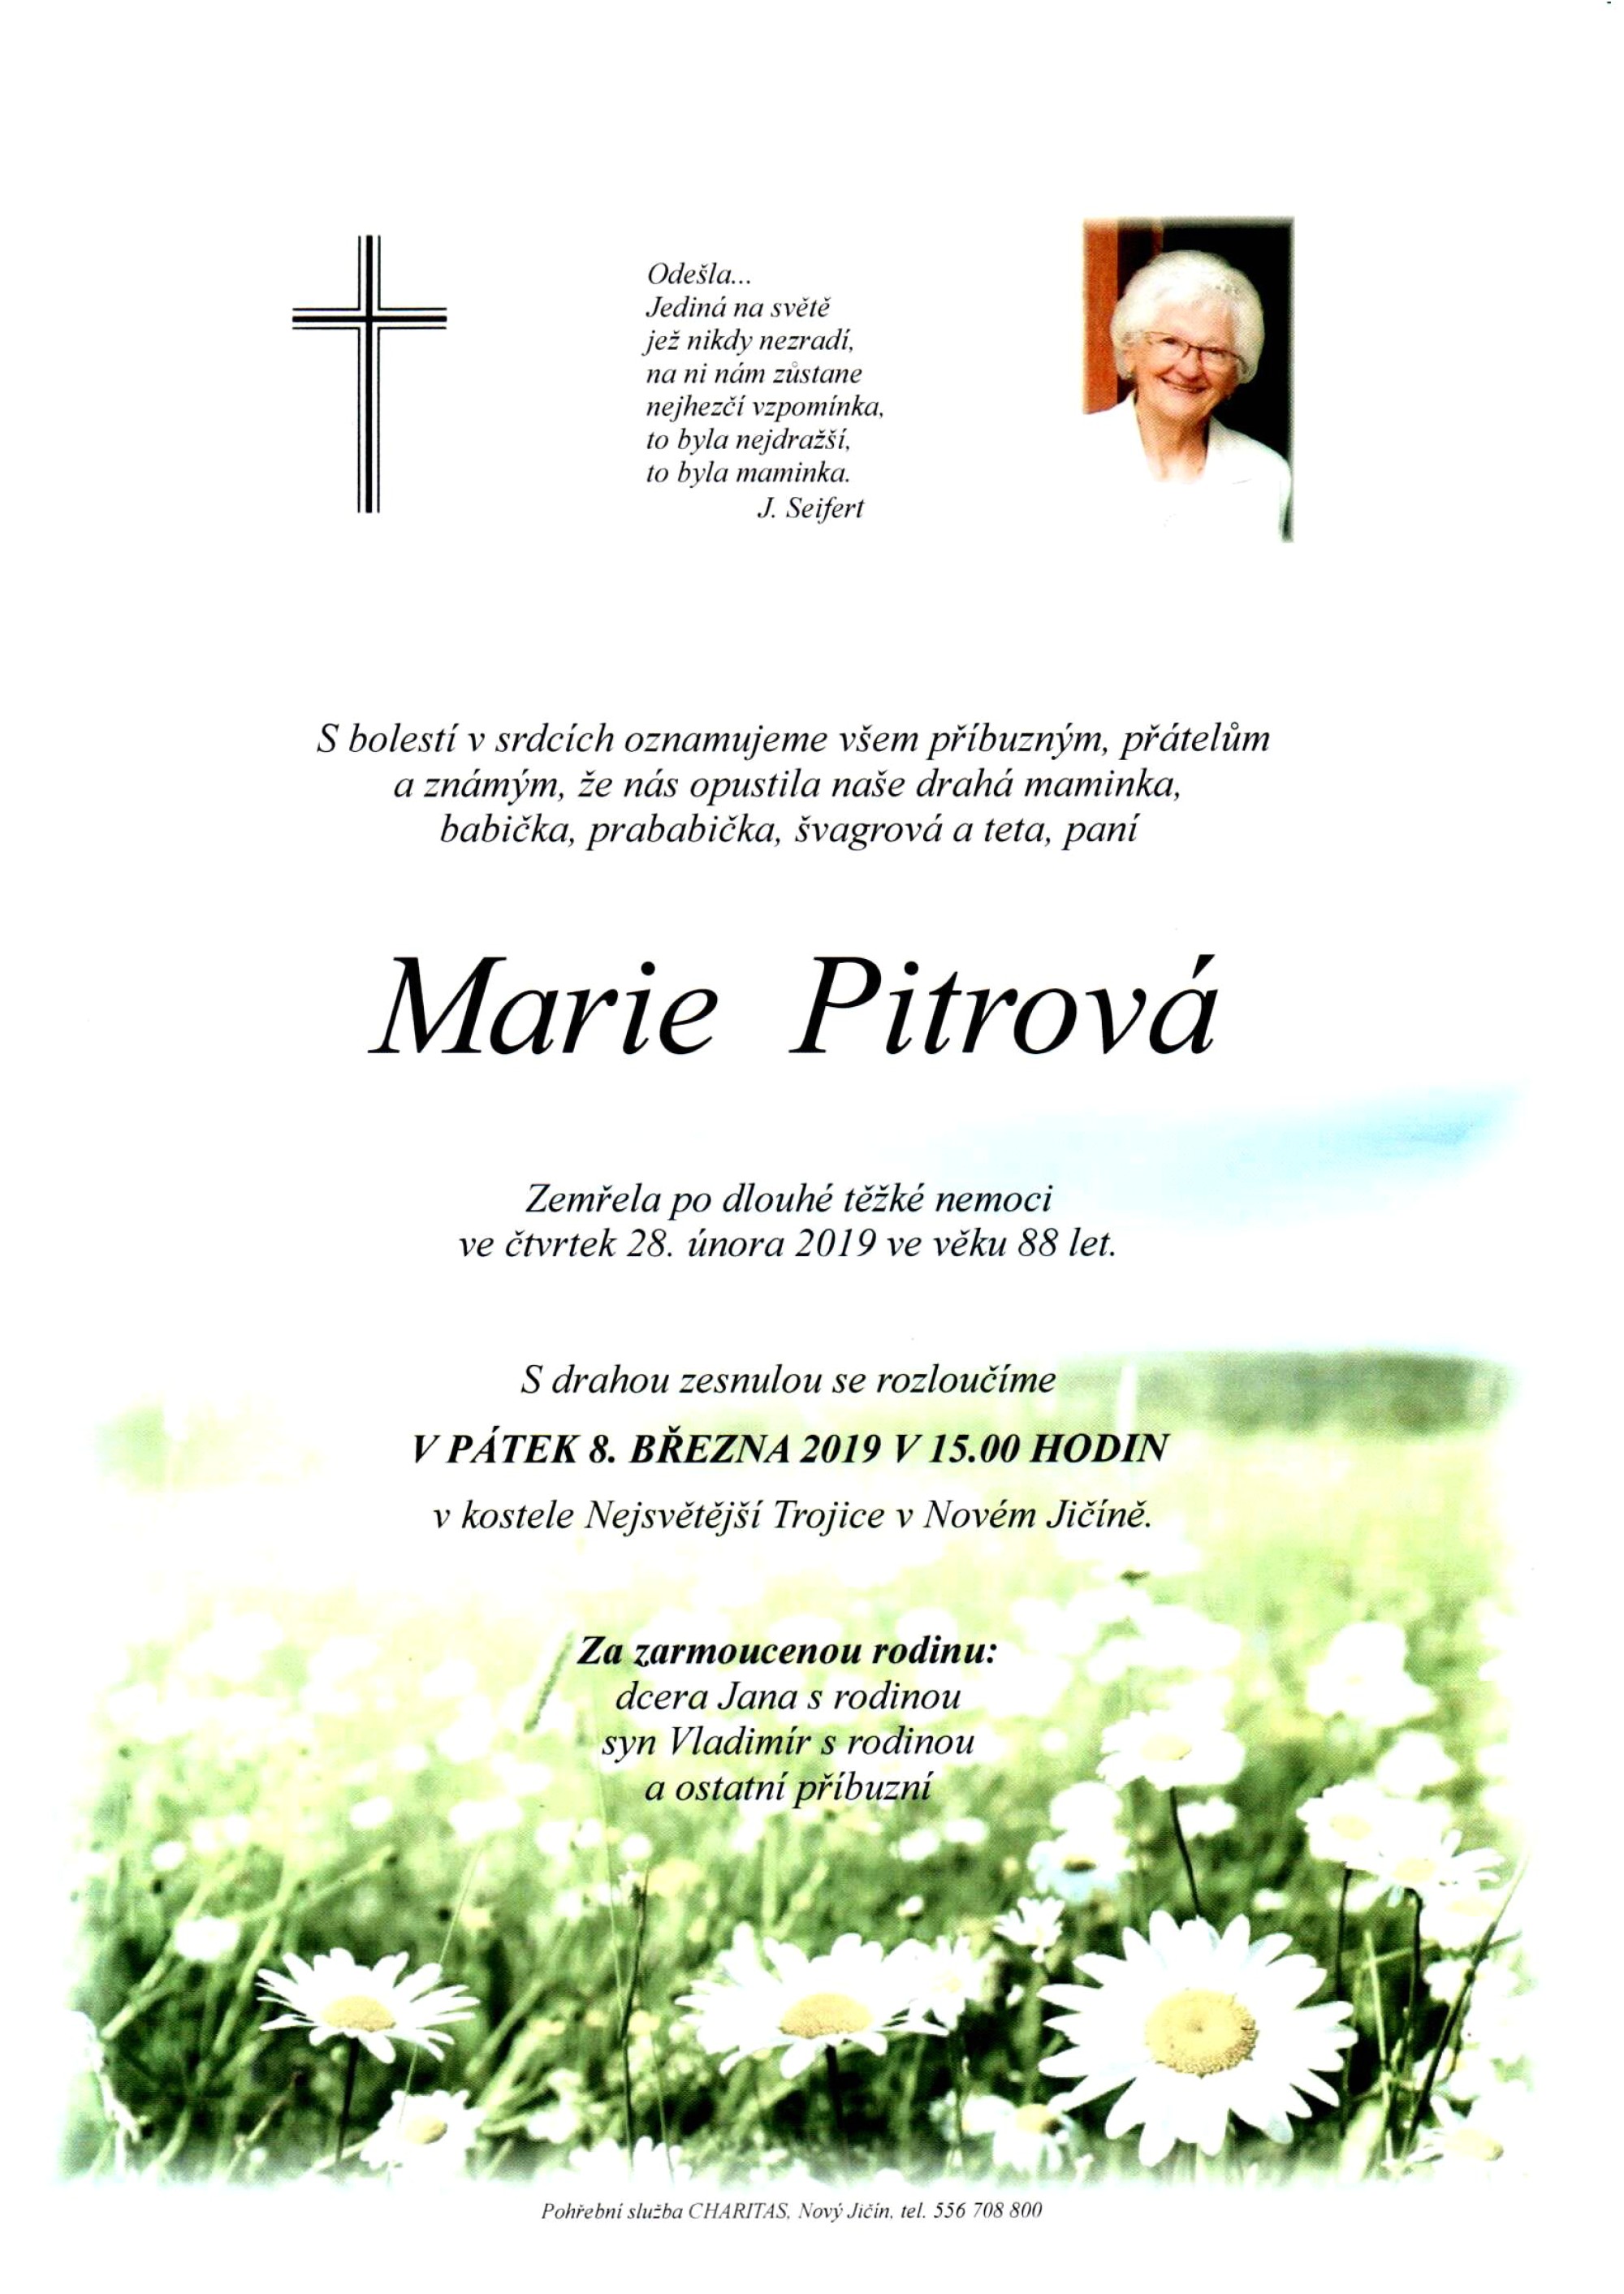 Marie Pitrová